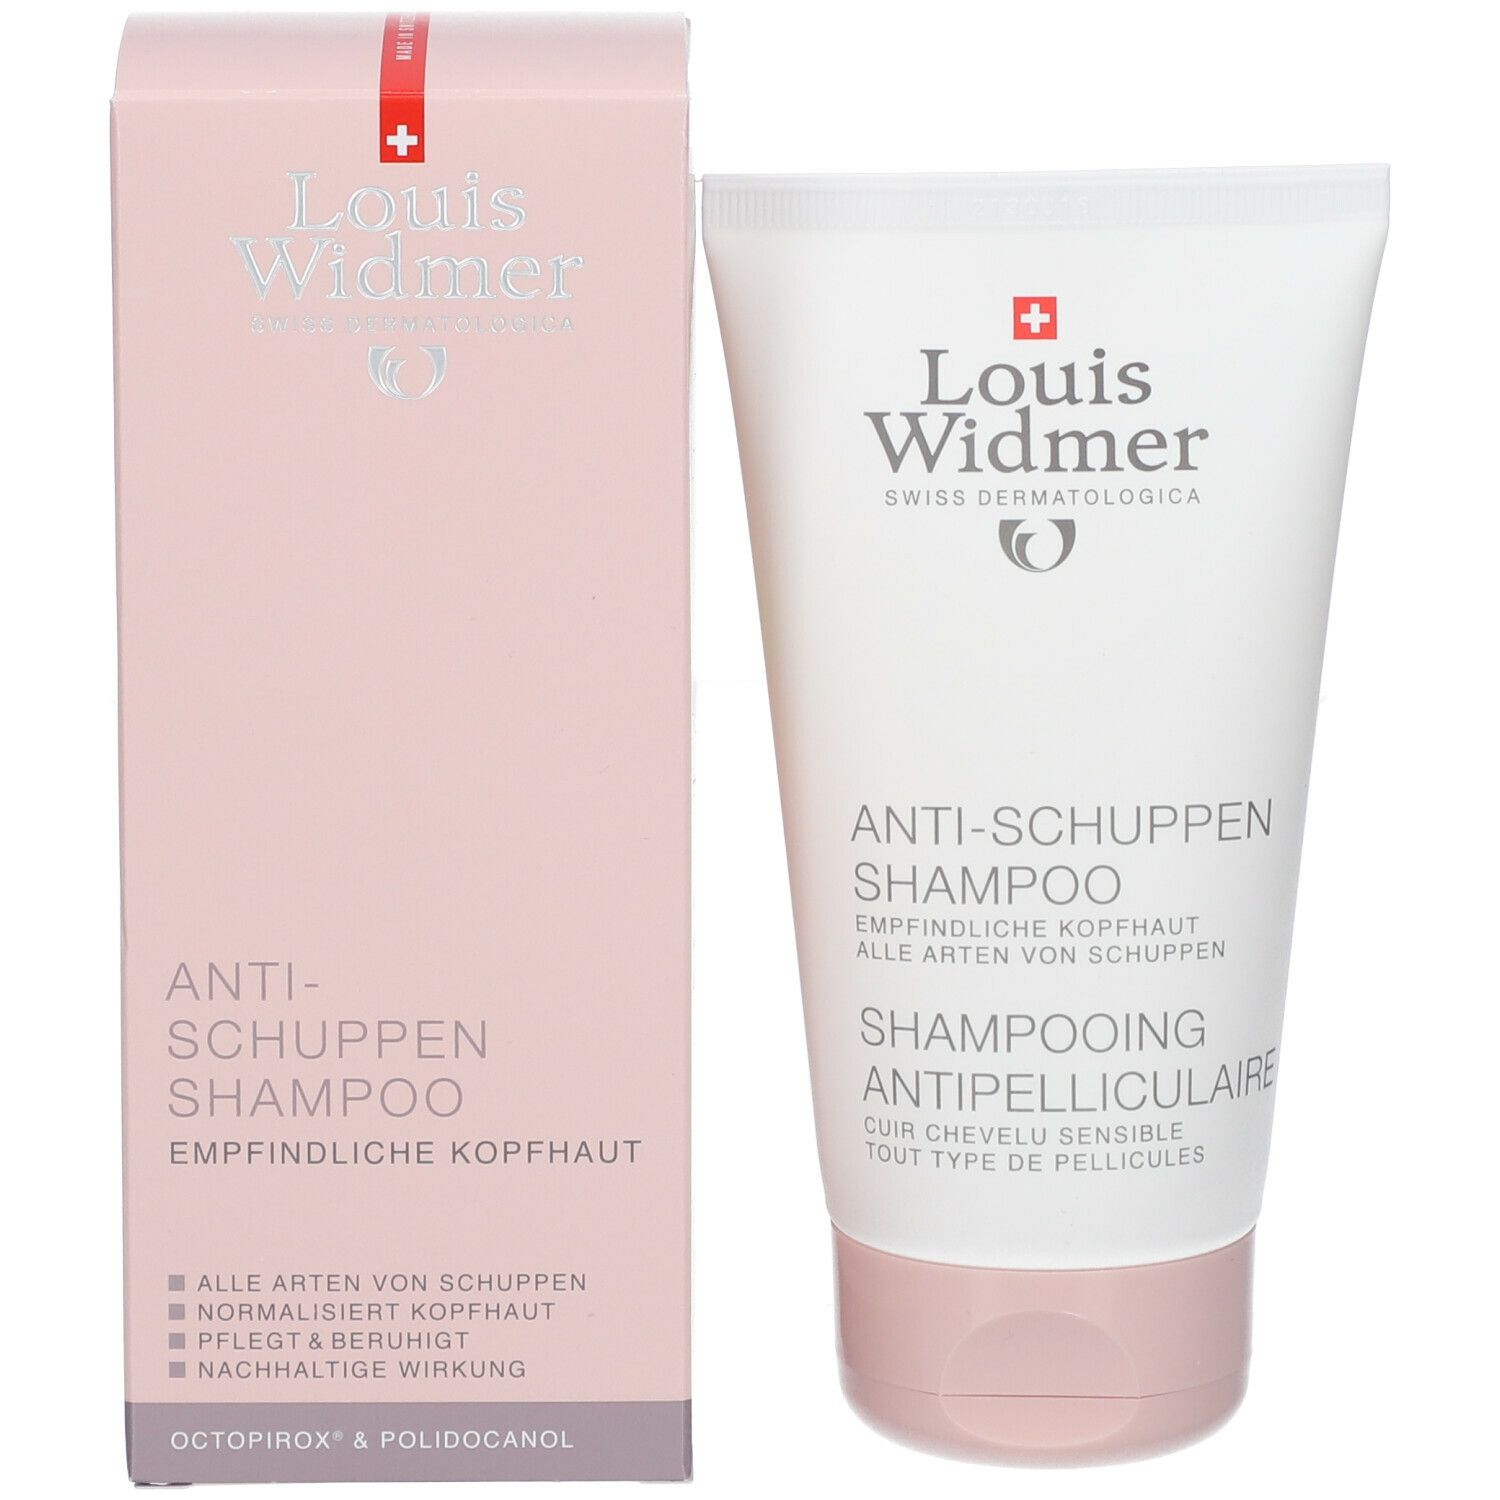 Louis Widmer Anti-Schuppen-Shampoo pafümiert